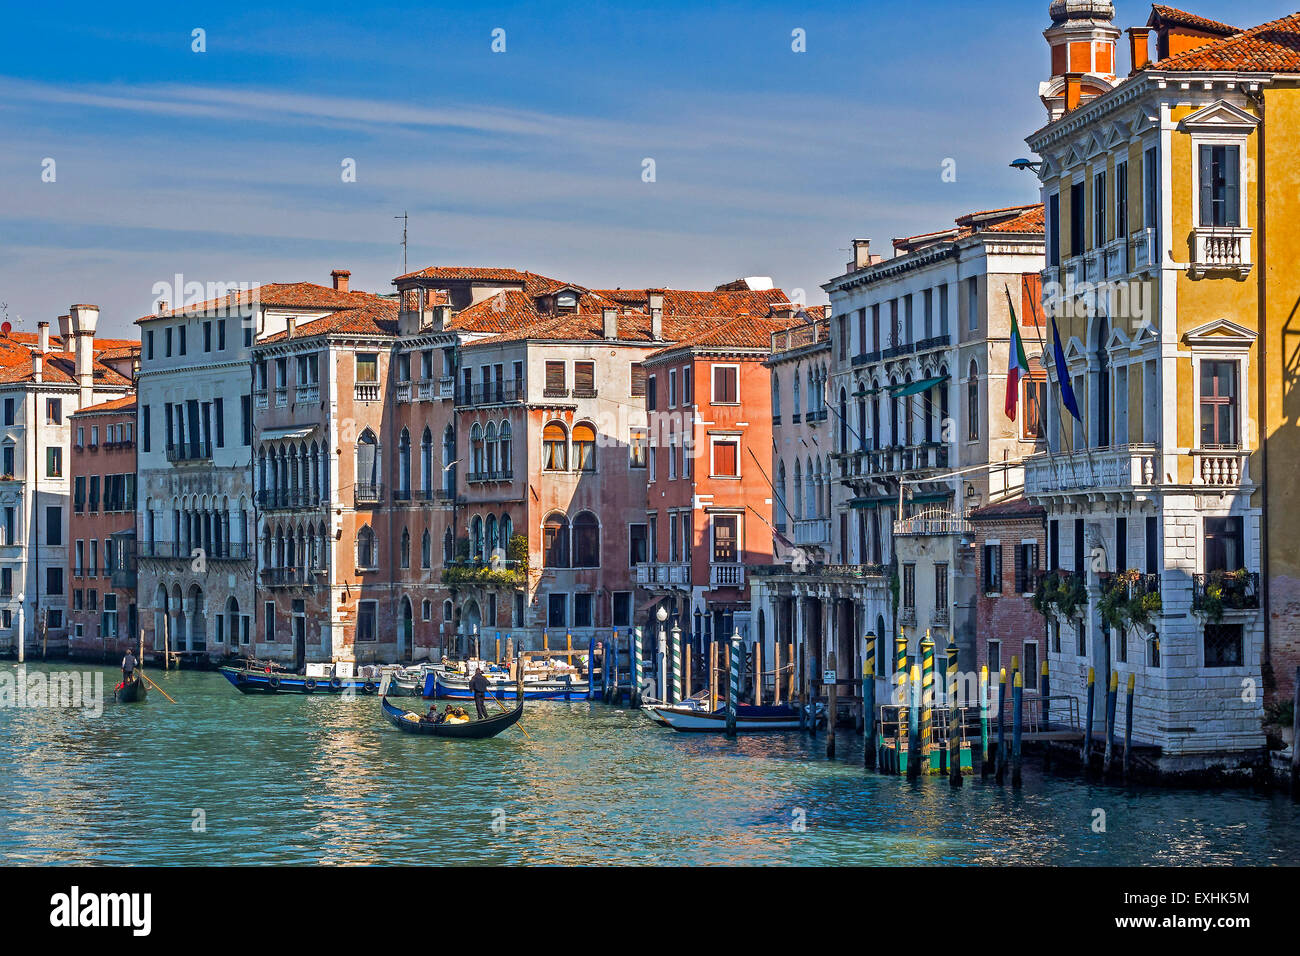 Gondolas On The Grand Canal Venice Italy Stock Photo